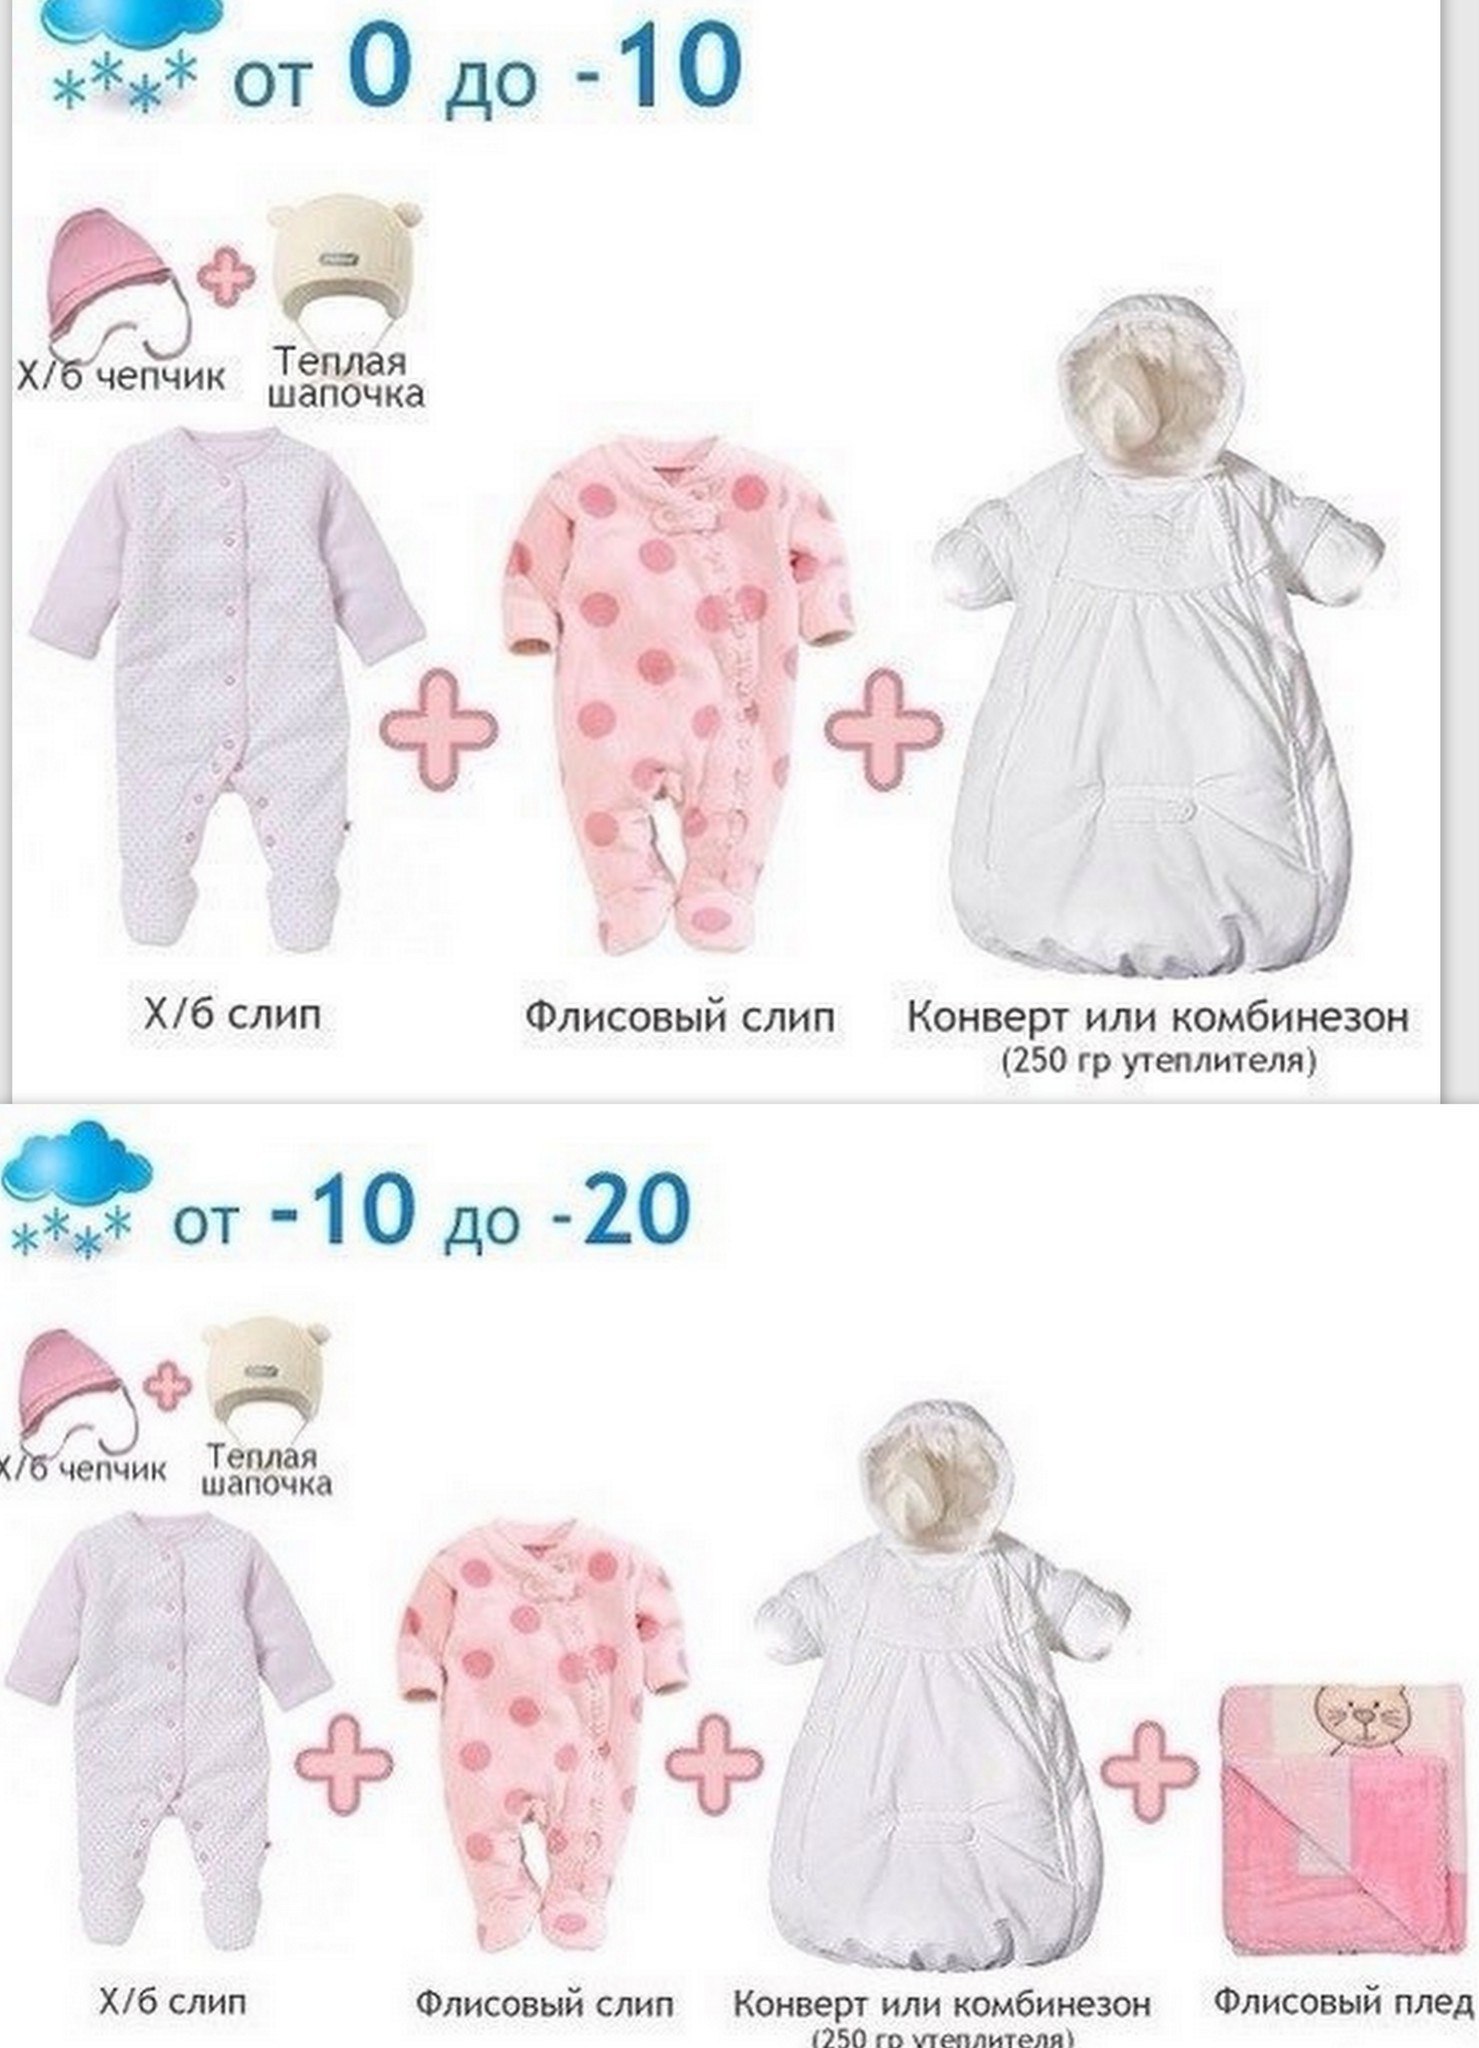 Как одевать ребенка полтора года. Одежда для новорожденных по градусам. Как одевать малыша. Как одевать новорожденного. Одежда для младенца по градусам.